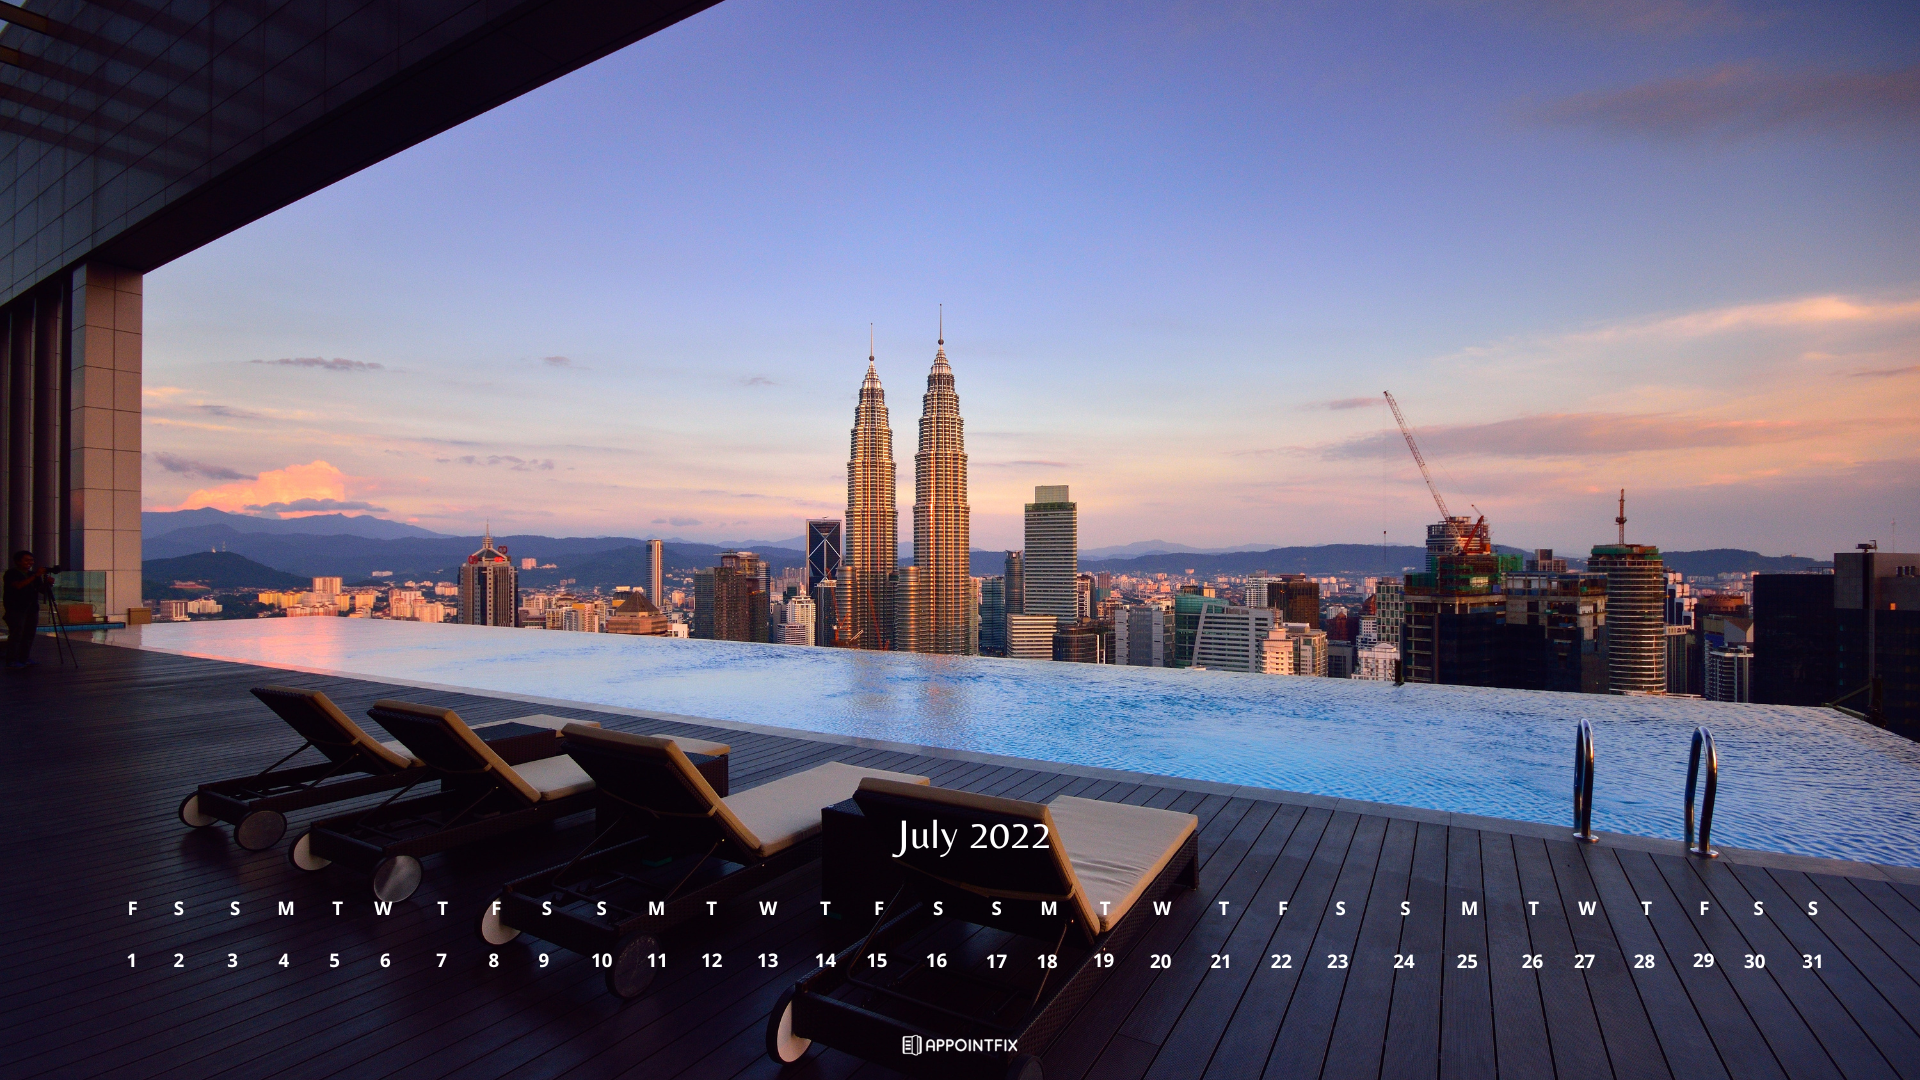 Nâng tầm màn hình của bạn với hình nền lịch tháng 7 năm 2022 độc đáo và miễn phí cho desktop và điện thoại di động. Thiết kế đẹp mắt và phù hợp với mùa hè đang đến đây. Hãy trang trí cho thiết bị của bạn và làm mới mọi ngày của mình.